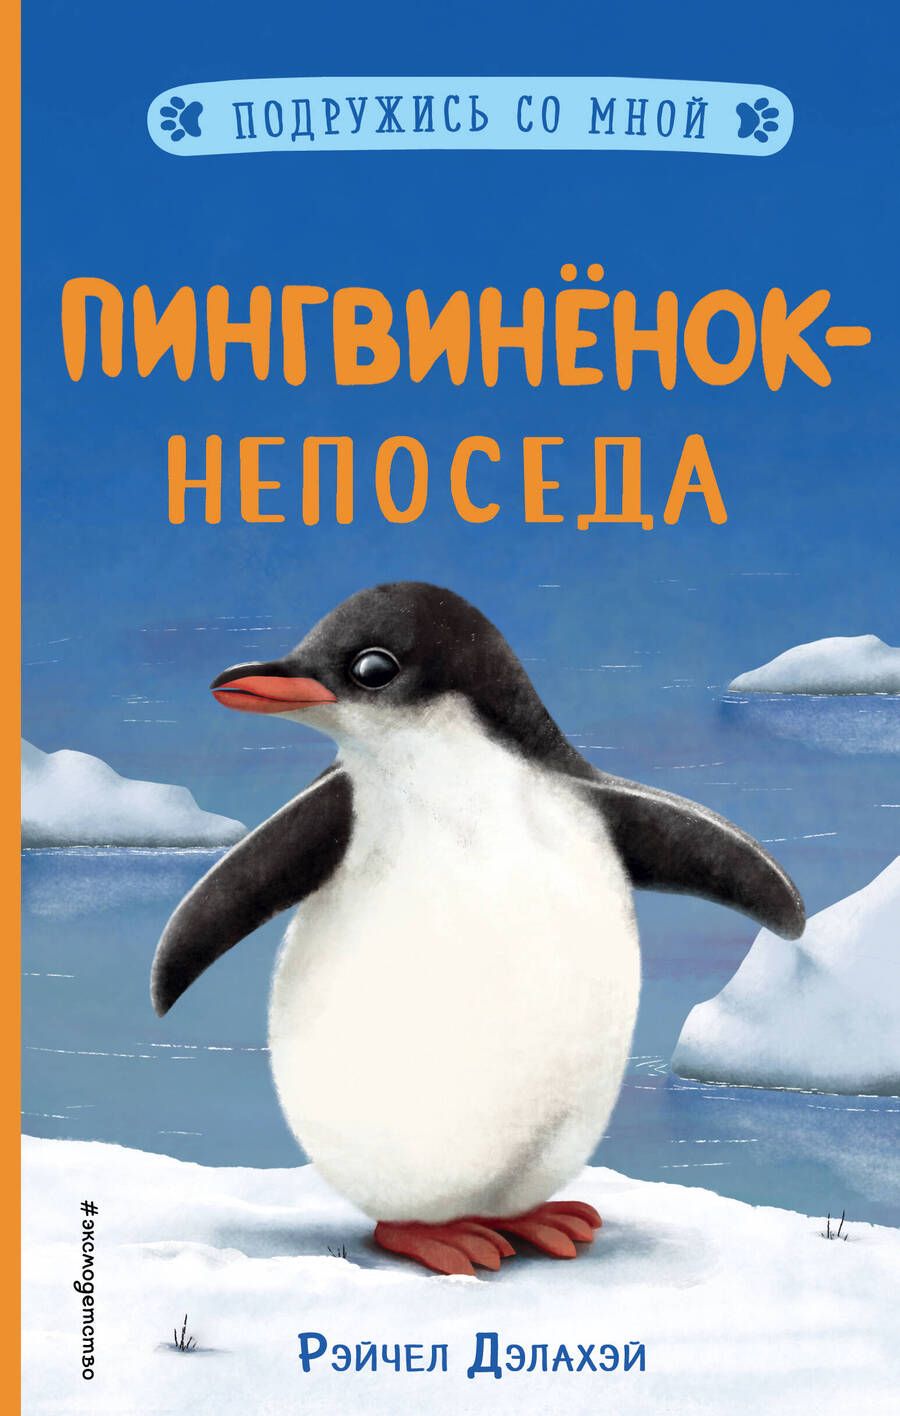 Обложка книги "Рэйчел Дэлахэй: Пингвиненок-непоседа"